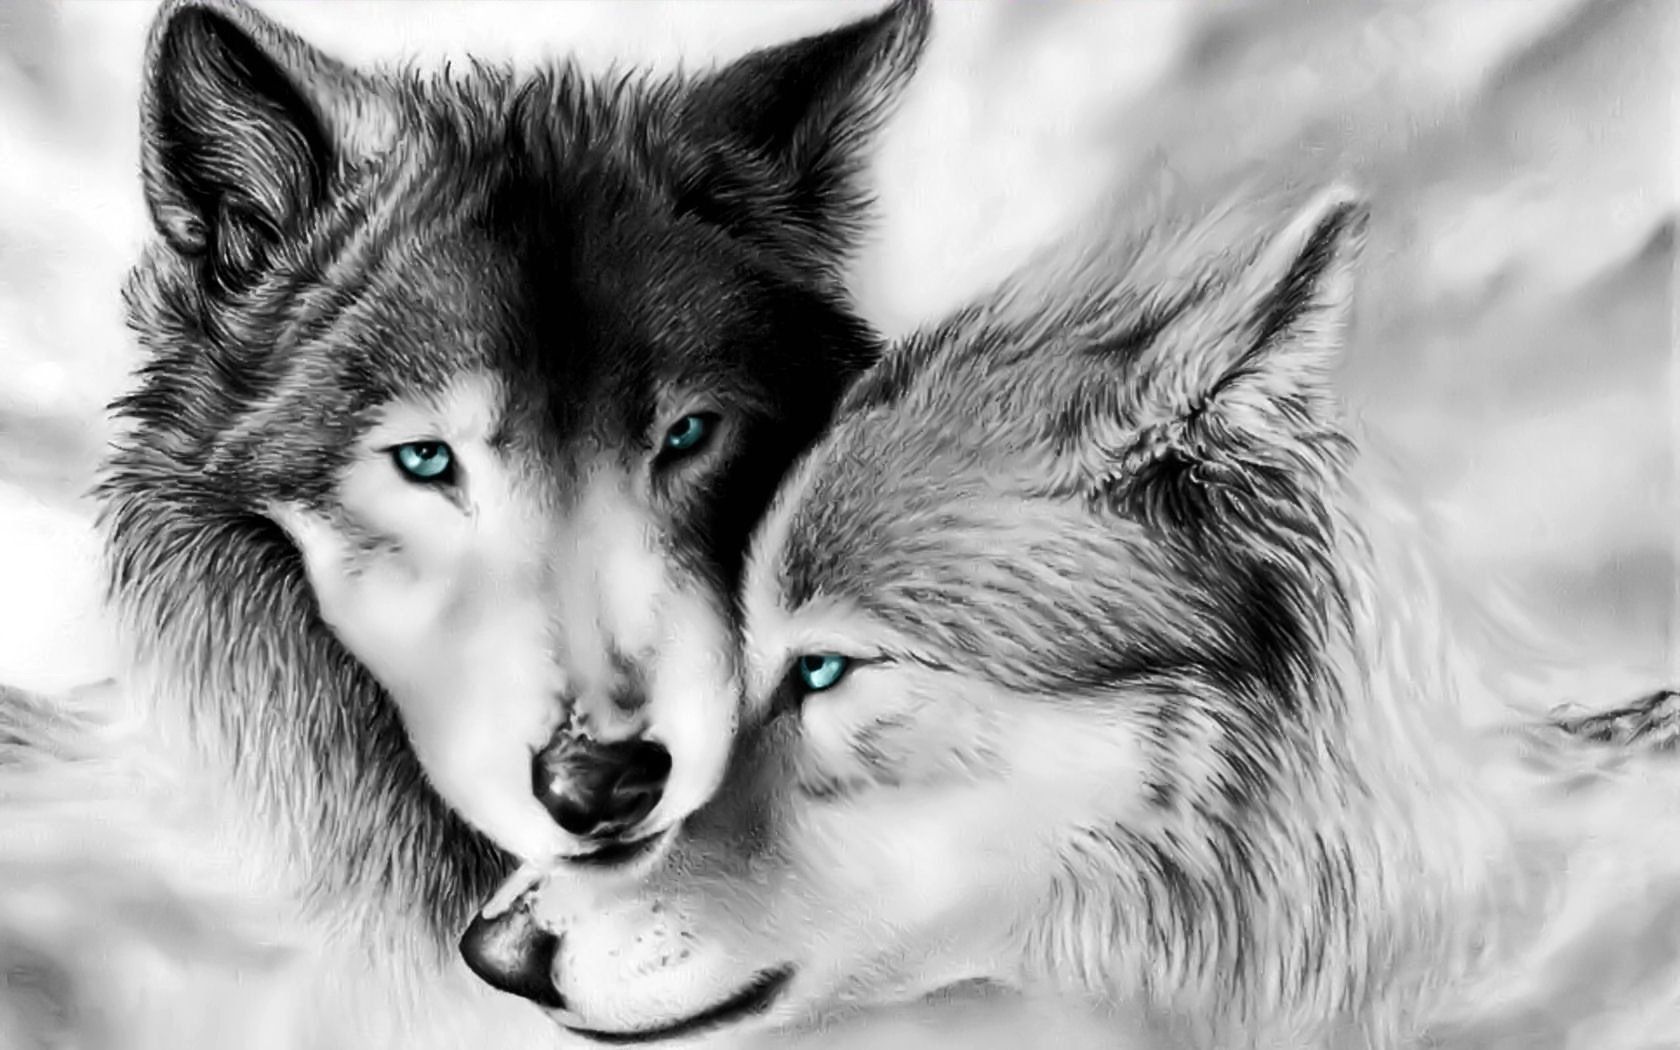 Скачать обои бесплатно Животные, Волки, Любовь, Волк, Картина картинка на рабочий стол ПК